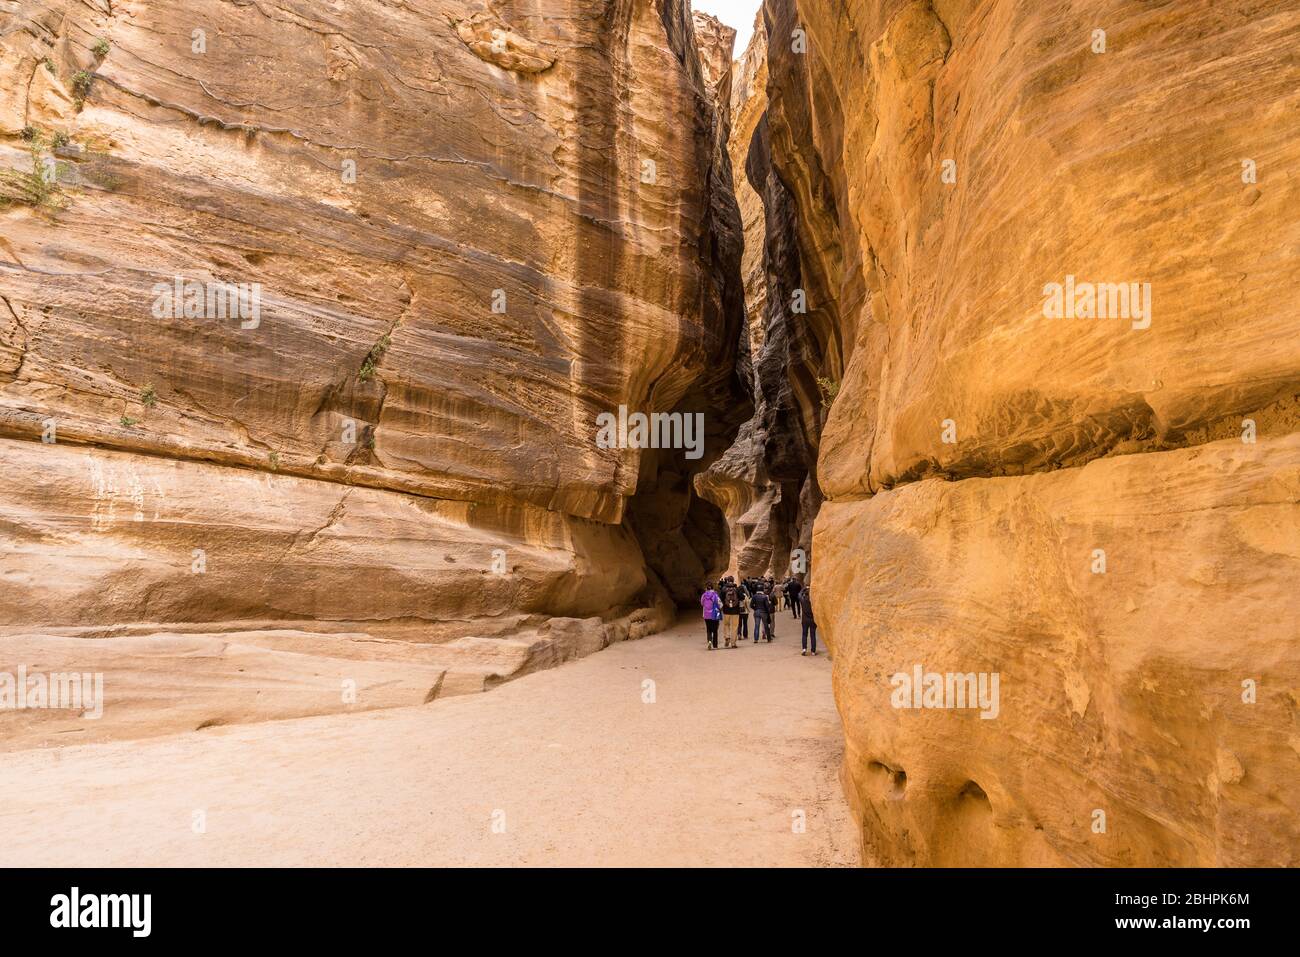 Les touristes marchaient dans une revine à Petra, Jordanie Banque D'Images